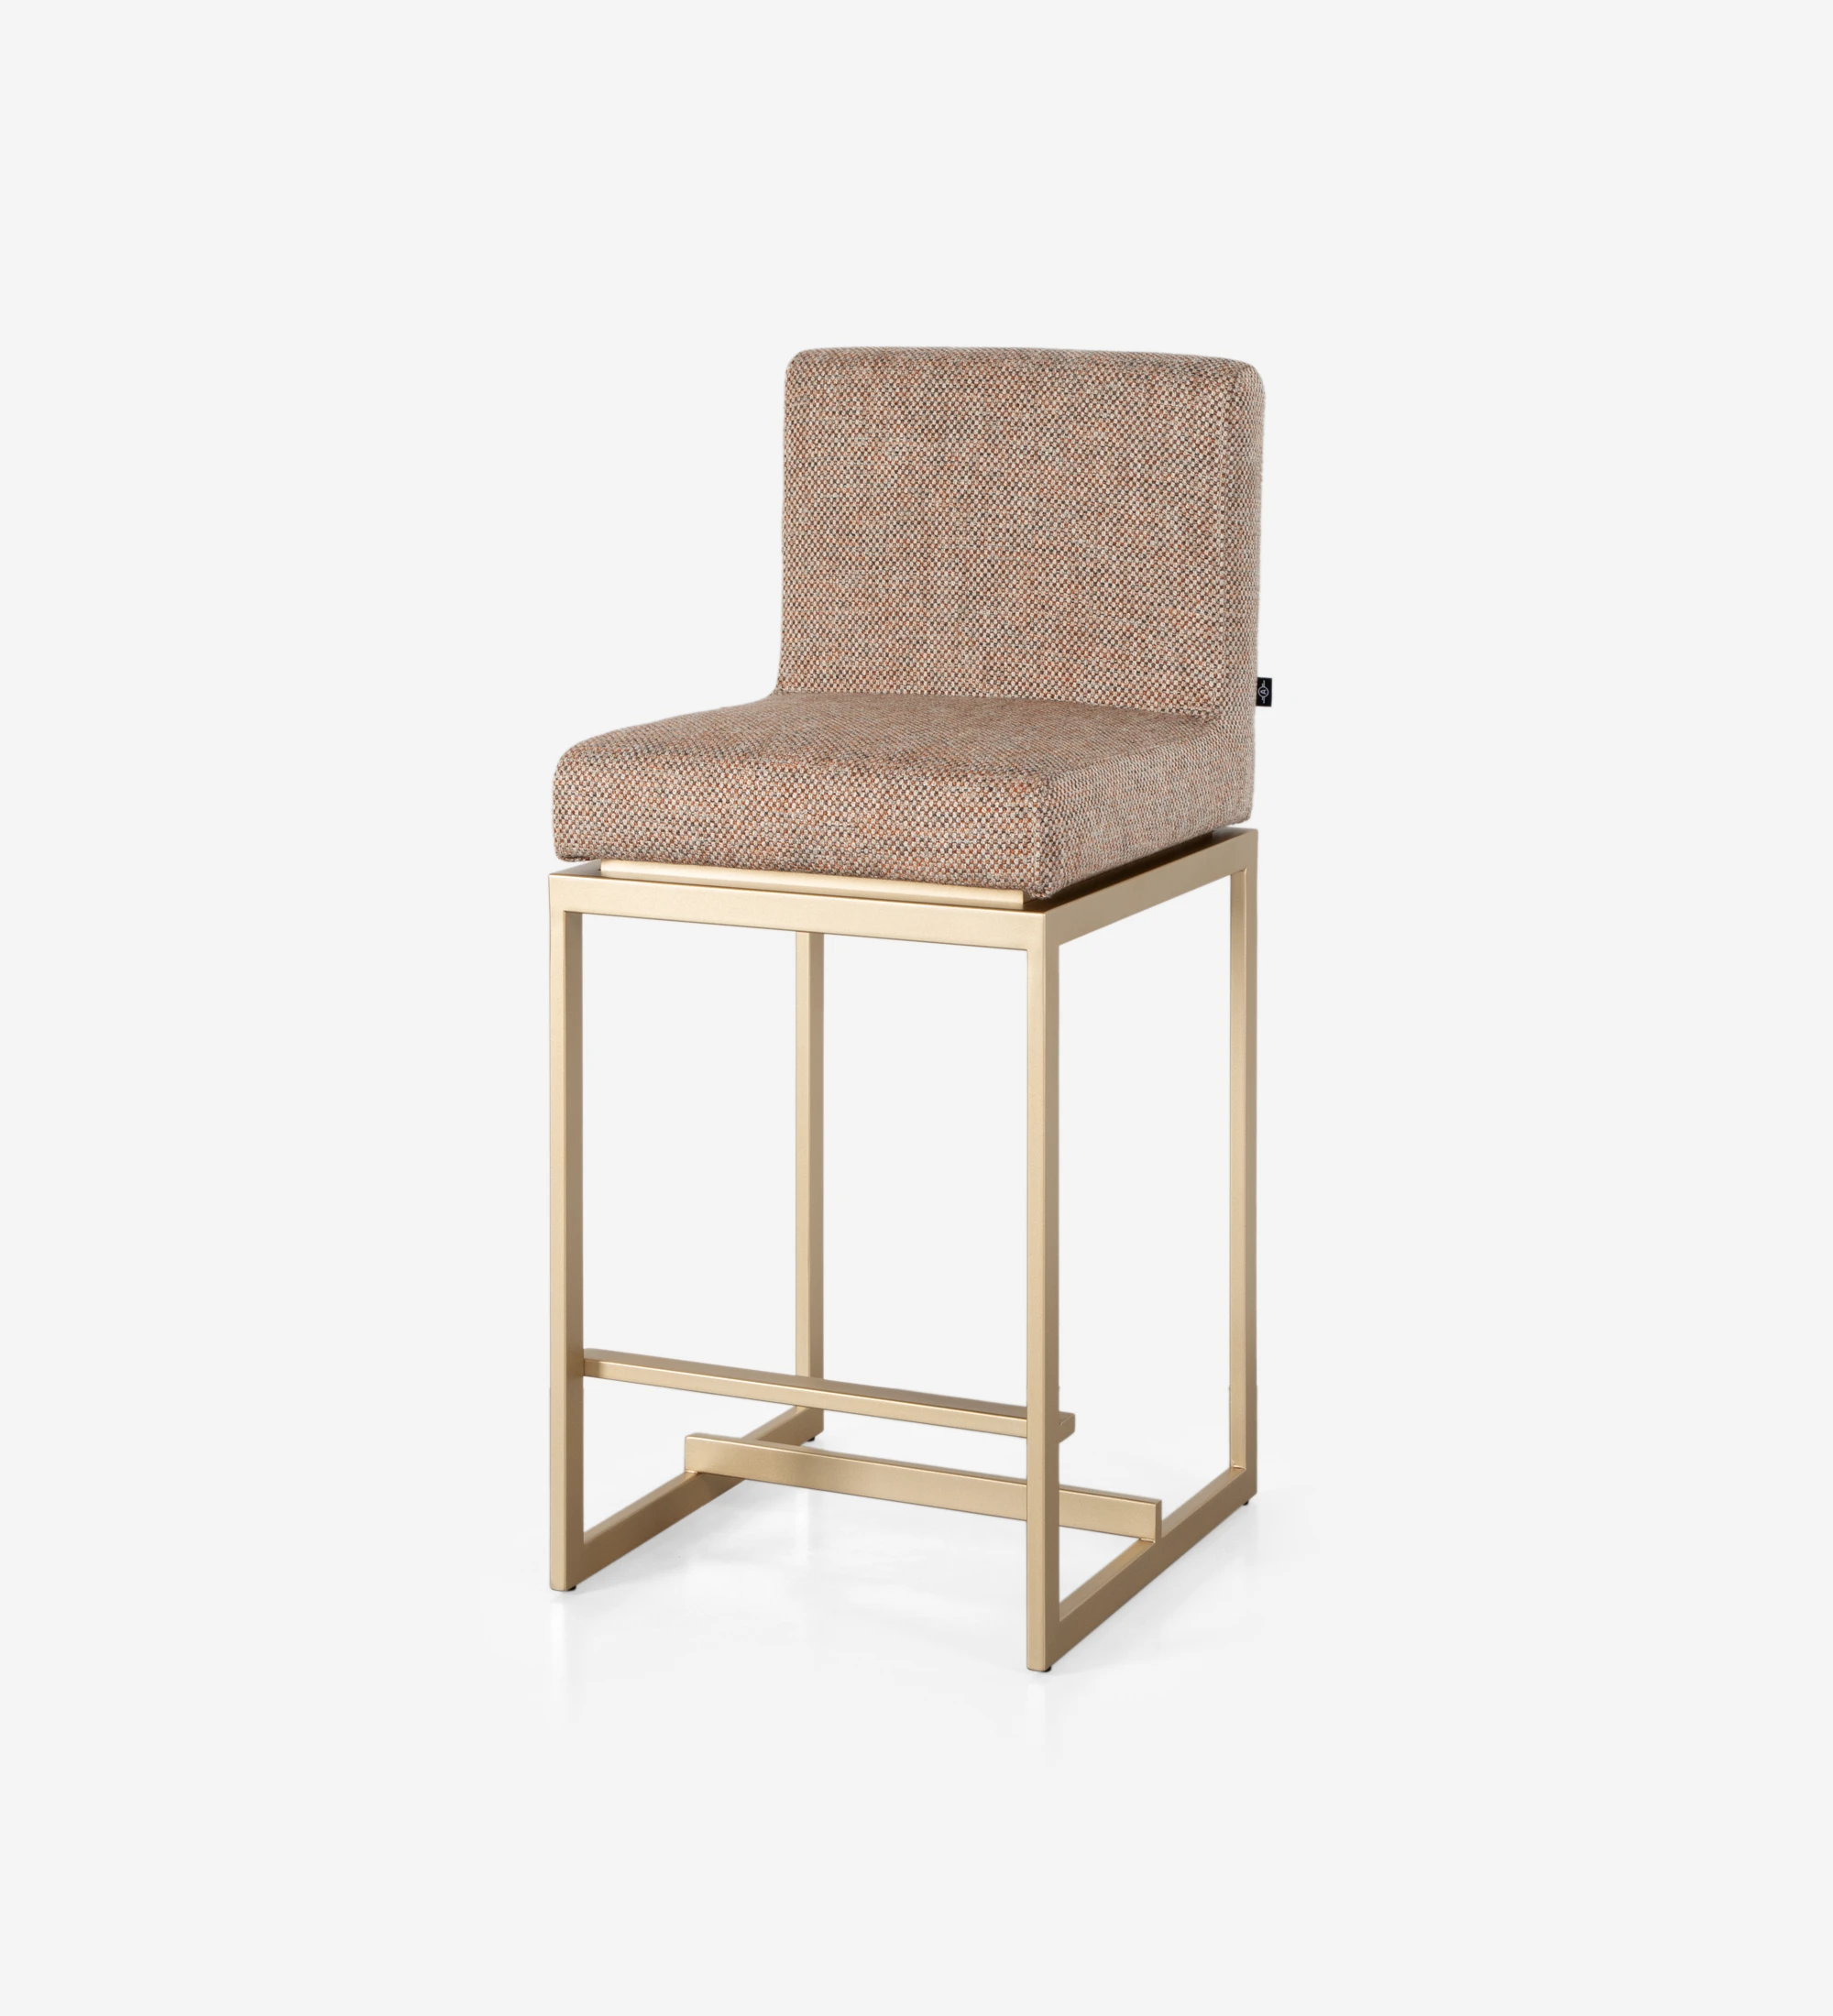 Tabouret avec assise et dossier recouverts de tissu, avec structure en métal laqué doré